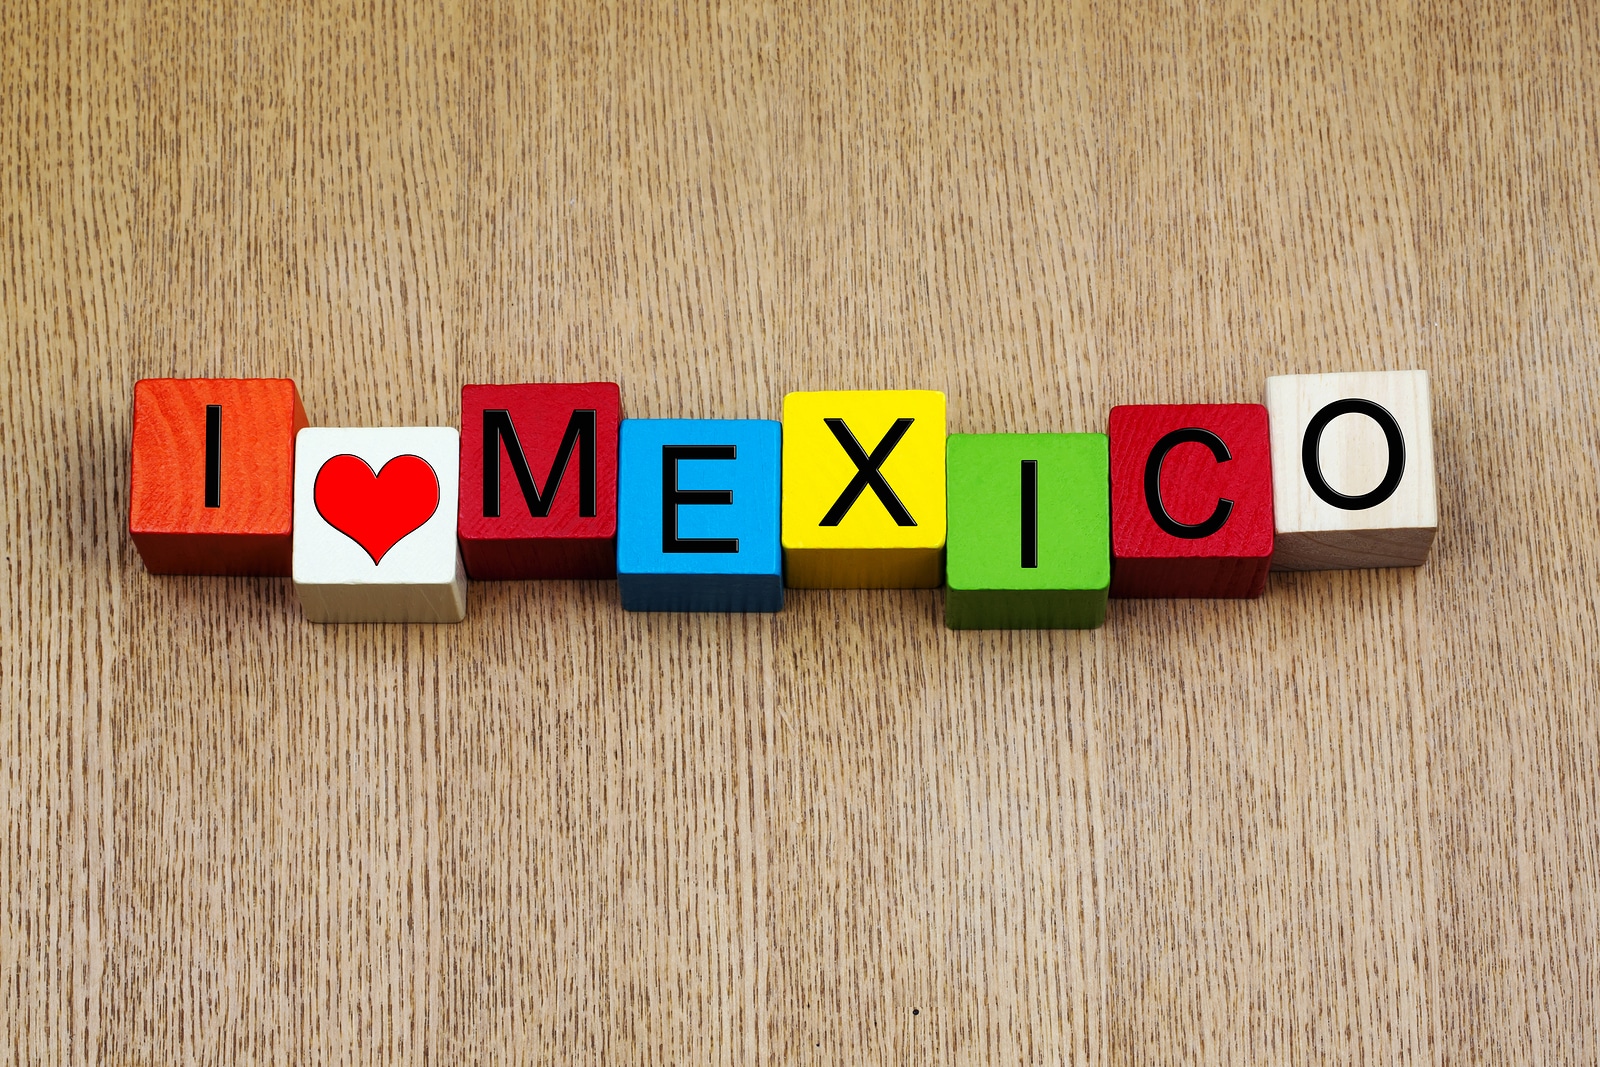 Festividades de la cultura mexicana celebradas en Abril y Mayo compartidas por Krystal International Vacation Club